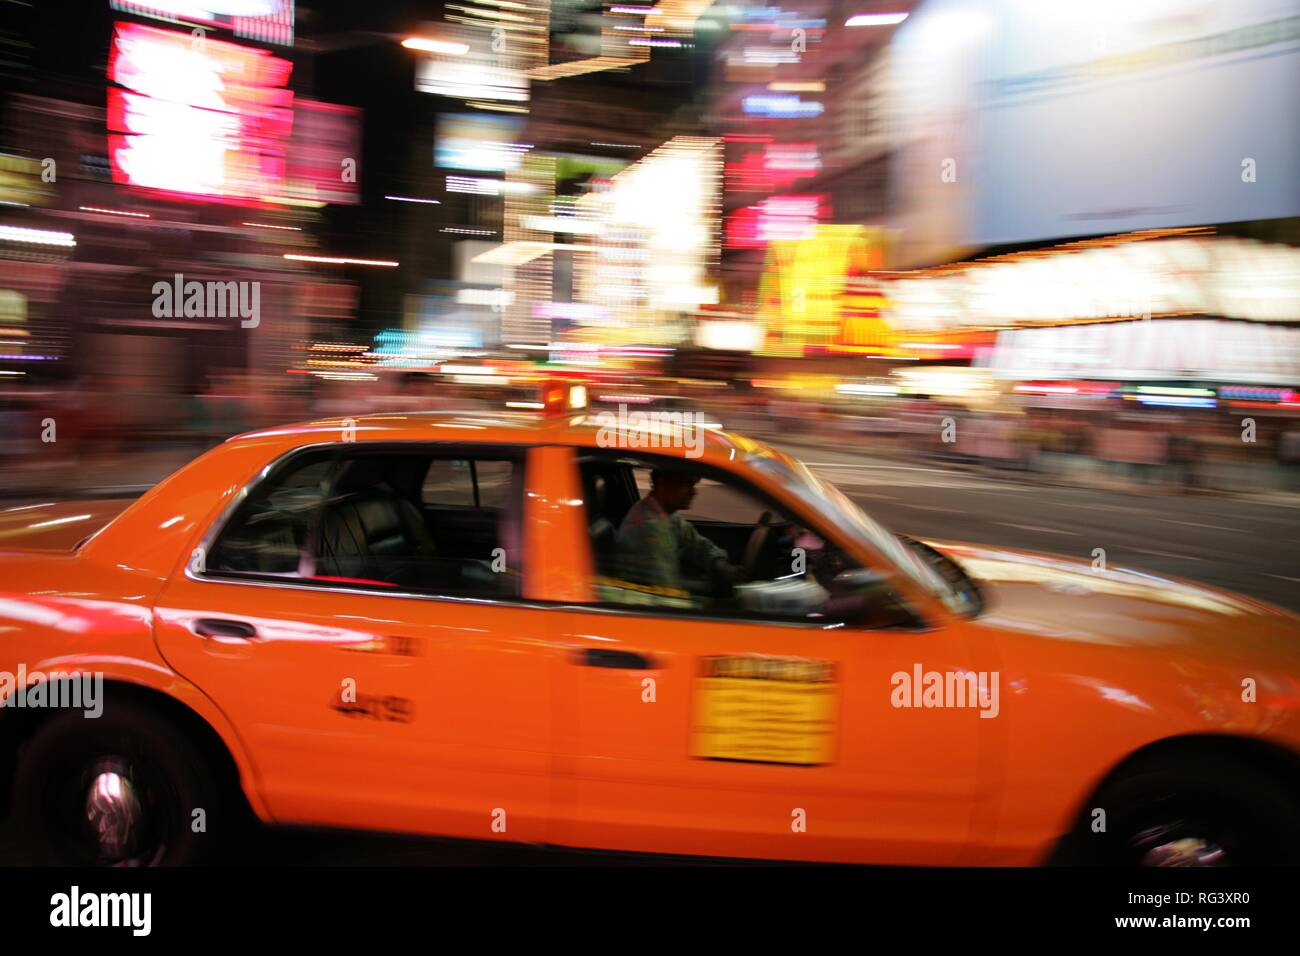 Ee.Uu., Estados Unidos de América, la ciudad de Nueva York: New Yorker Taxi, Taxi amarillo. Foto de stock